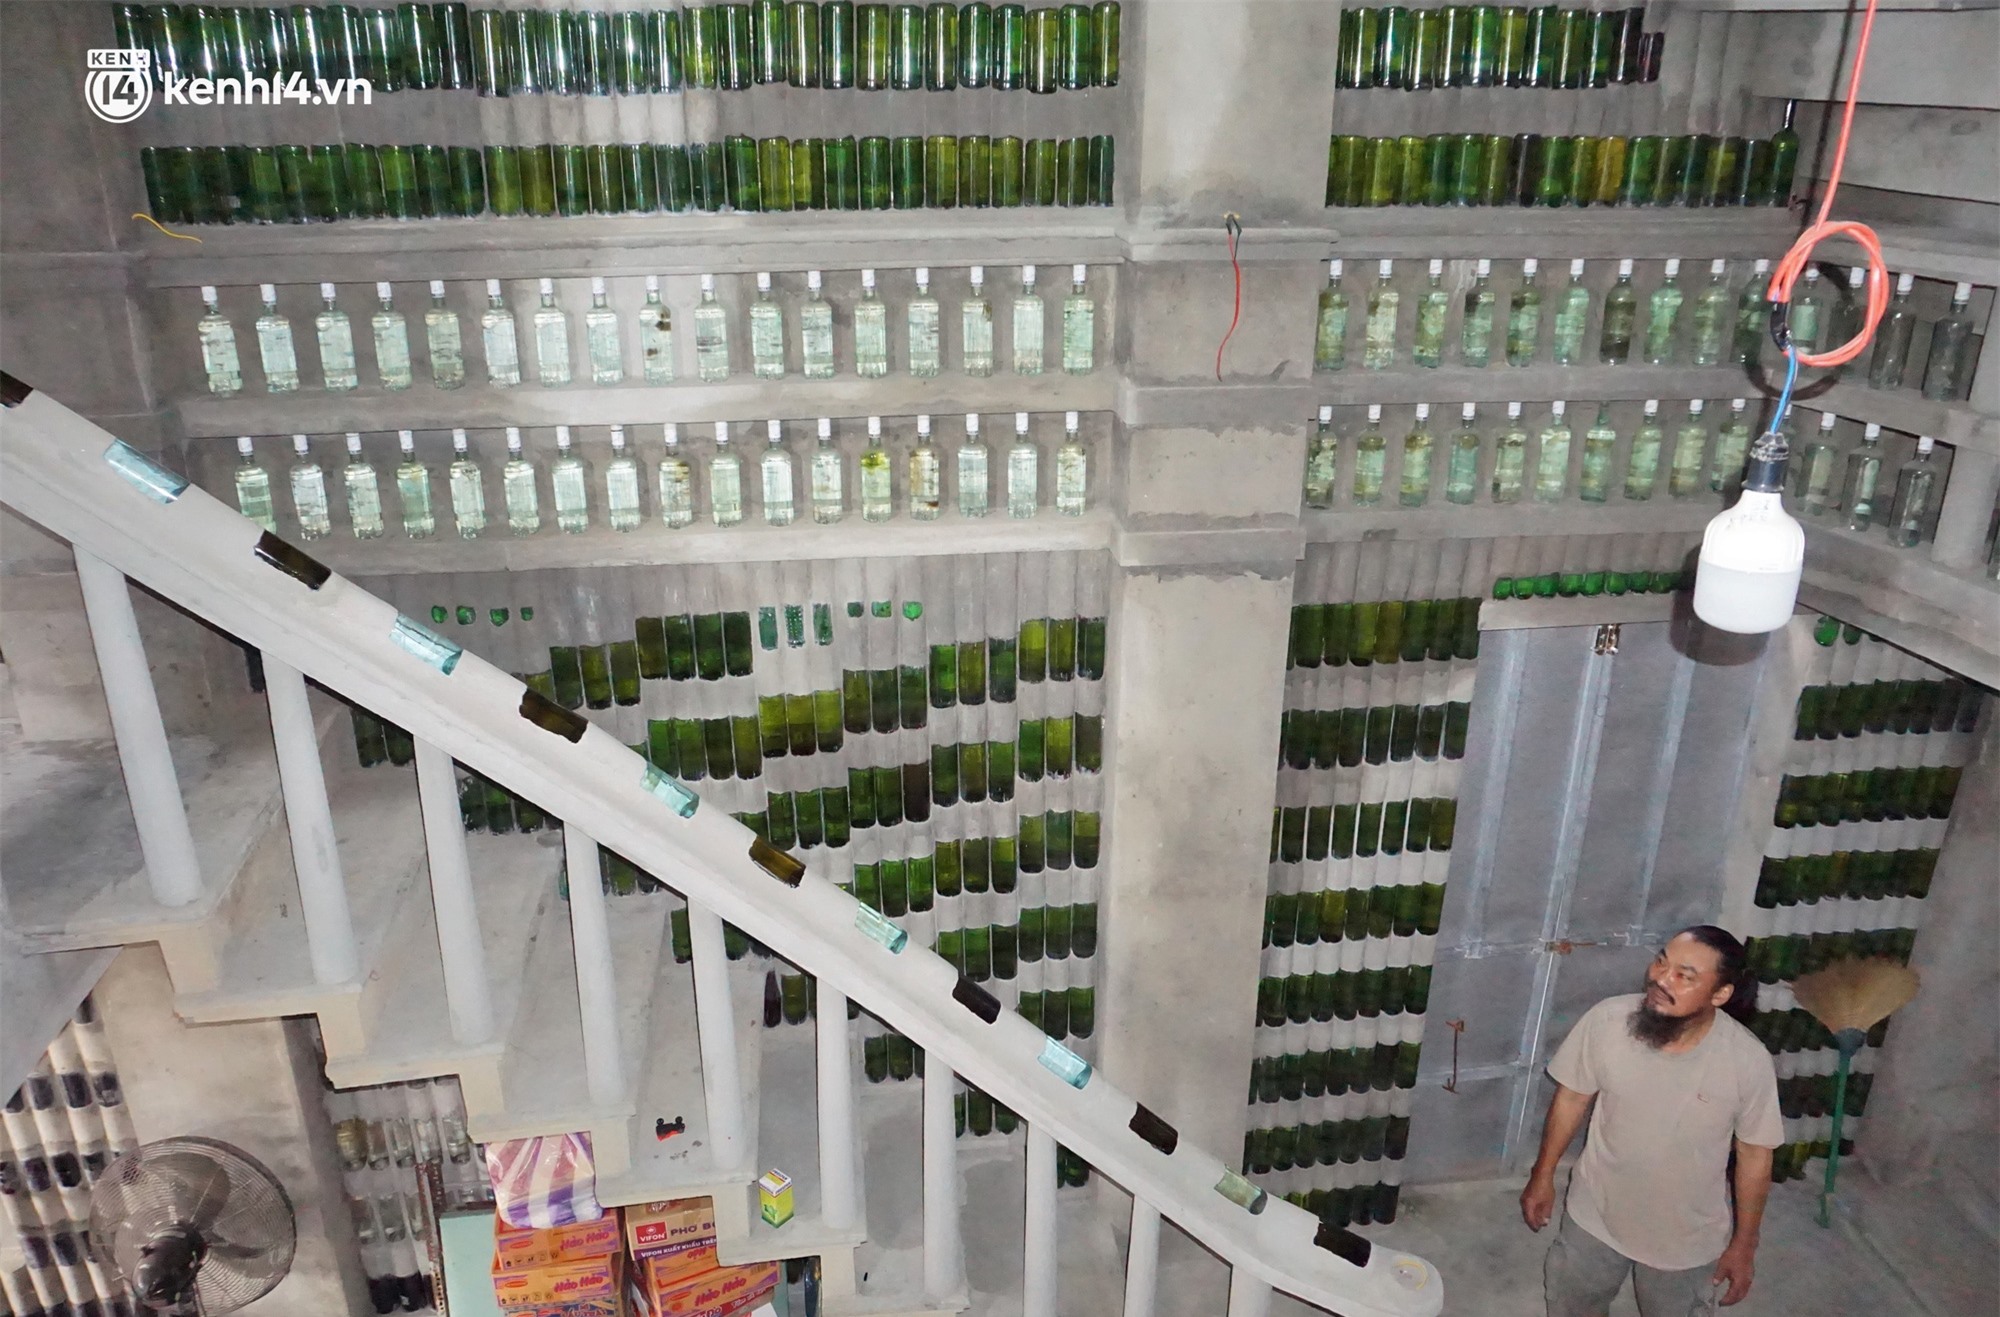 Bên trong ngôi nhà 2 tầng được xây dựng bằng hàng chục nghìn vỏ chai của dị nhân ở Hội An - Ảnh 2.